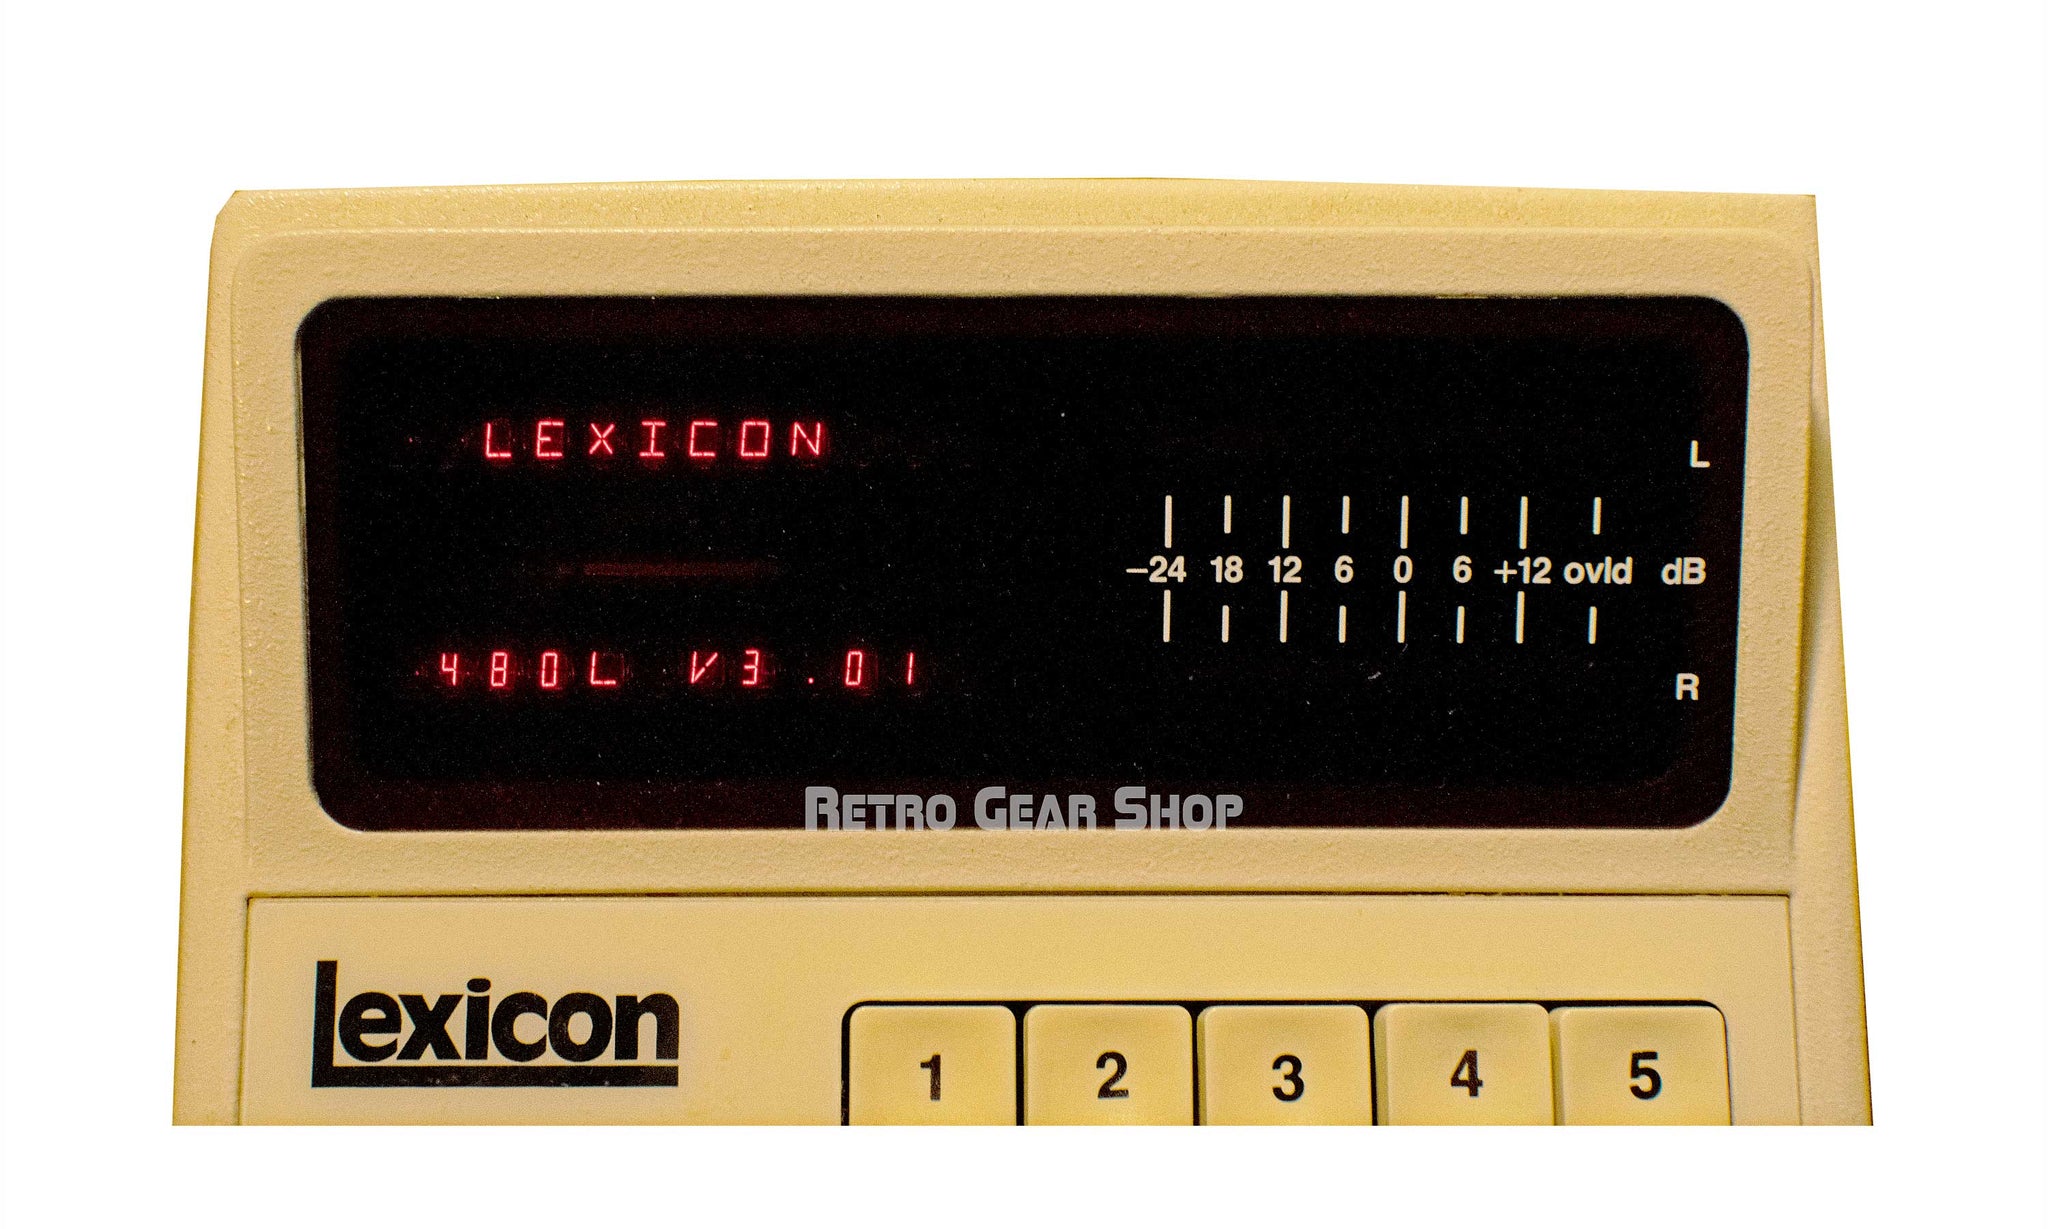 Lexicon 480L V3.01 + Larc